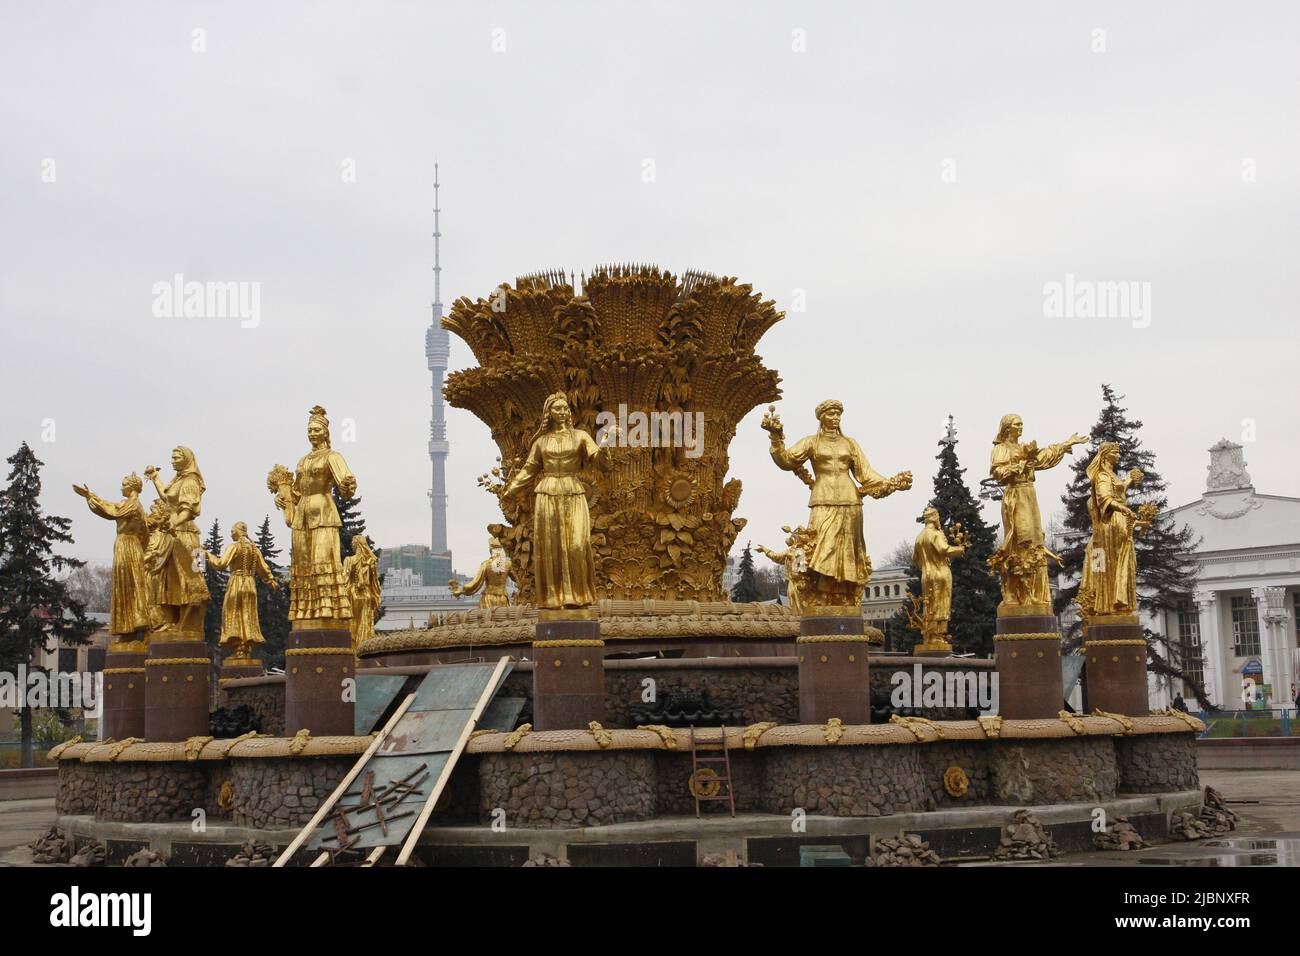 Goldene bedeckte weibliche Statuen, Symbole von 15 sowjetrepubliken in der UdSSR bei VDNKh - Ausstellung der Volkswirtschaft in der UdSSR, immer noch beliebt in Moskau. Stockfoto